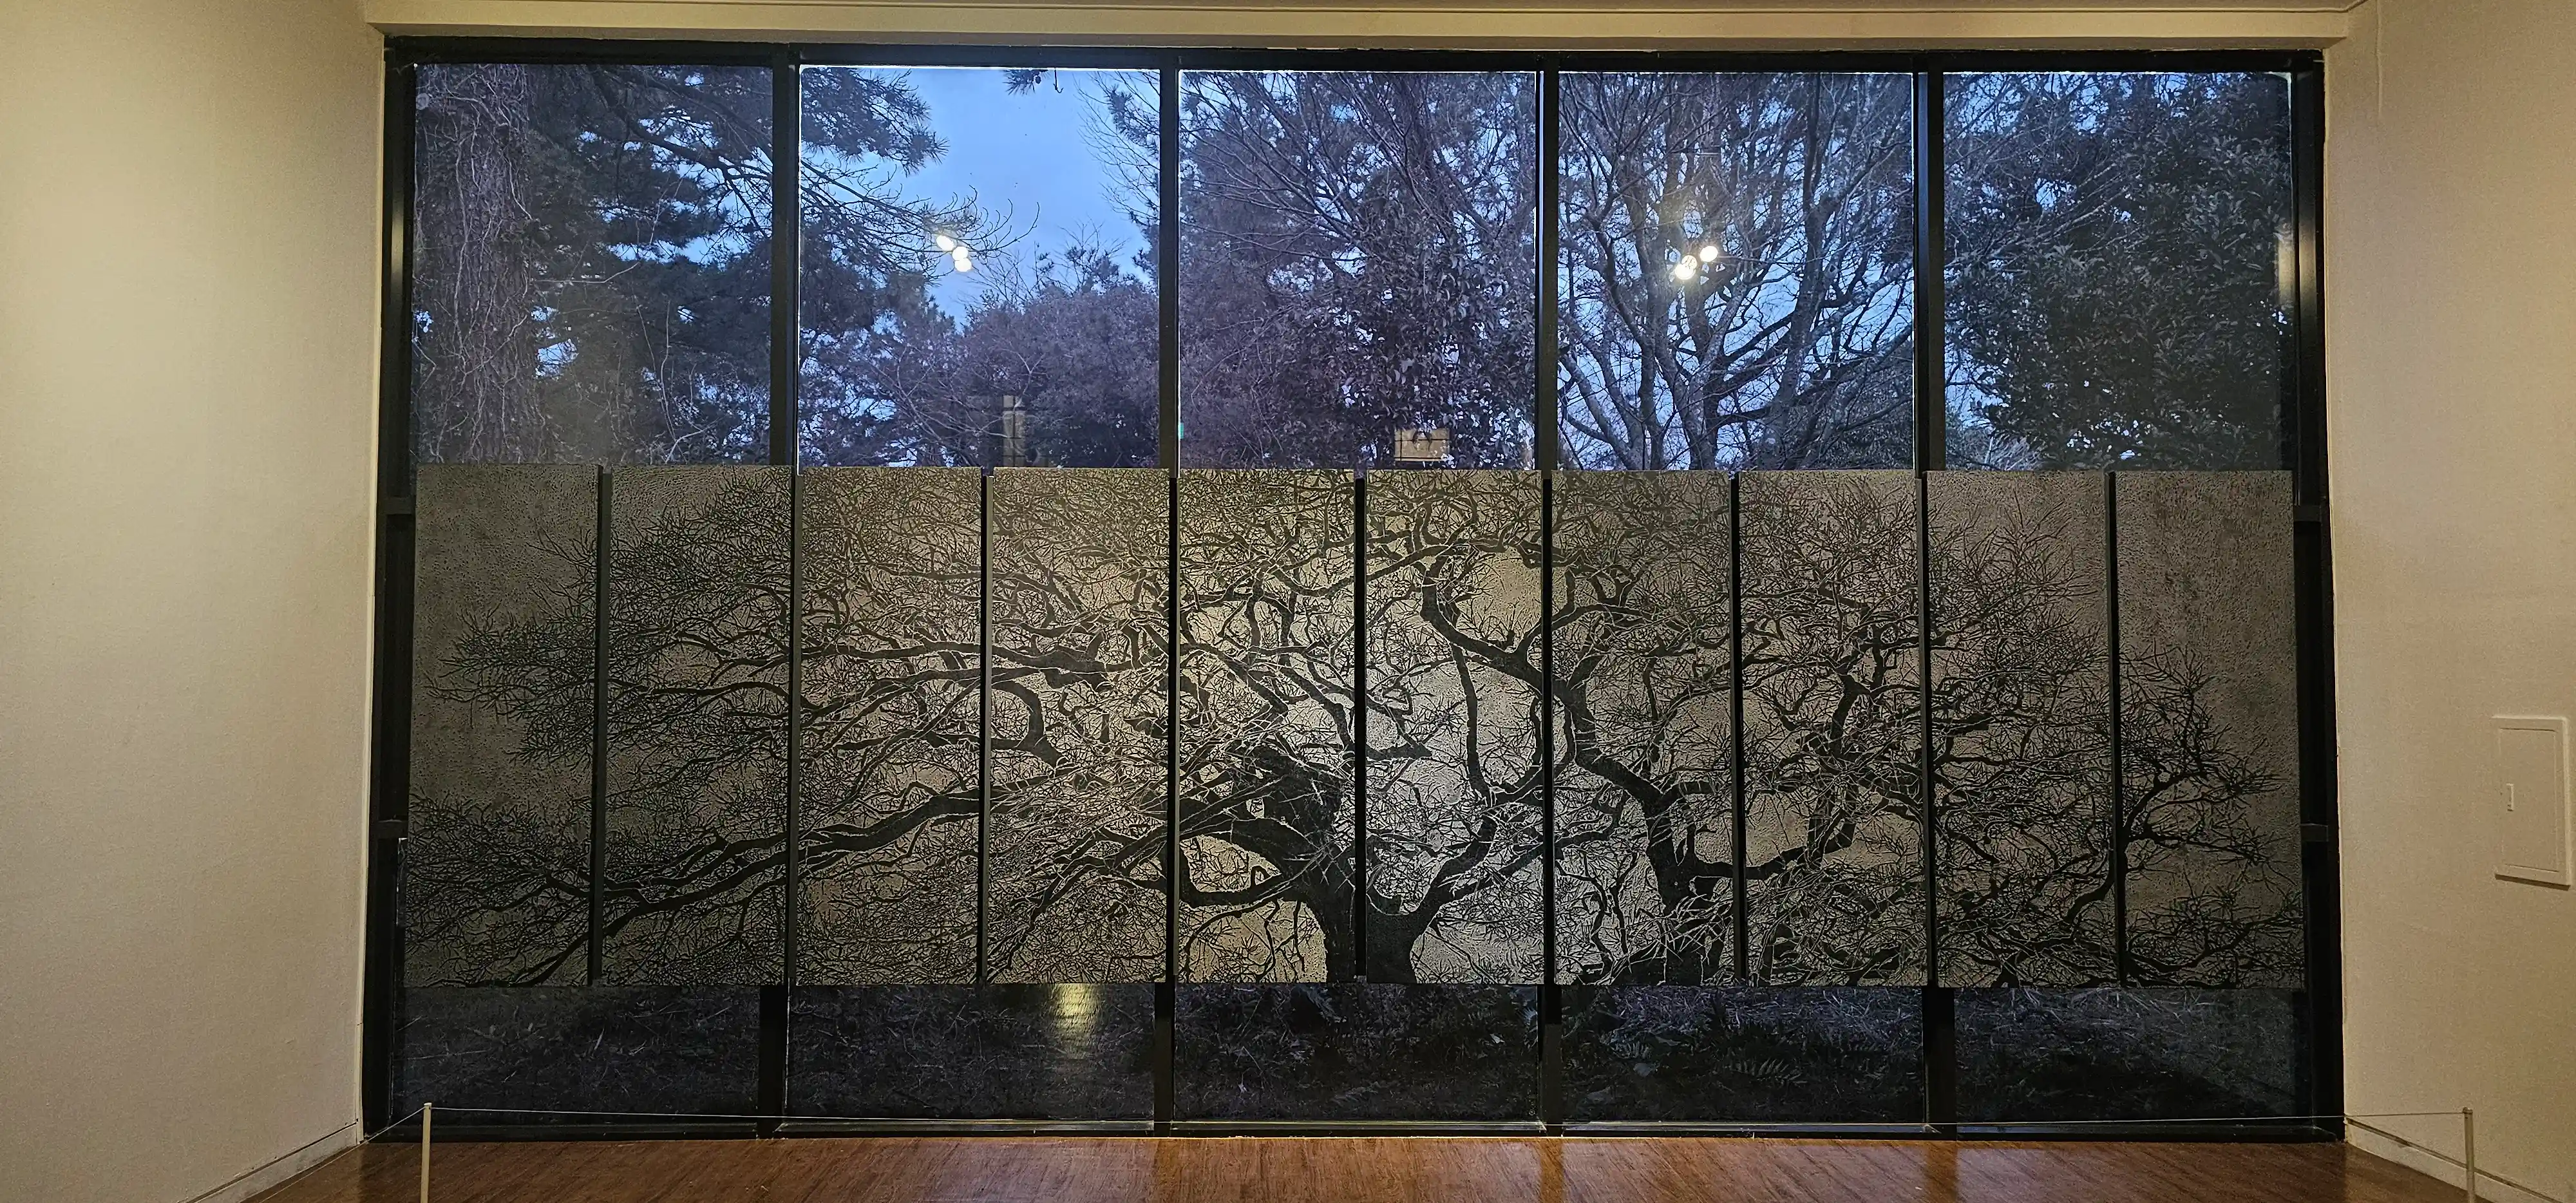 거대한 나무 형상의 벽화. 창문에 그려진 나무벽화와 외부에 실제 있는 나무와 조화되는 멋진 공간이었습니다.